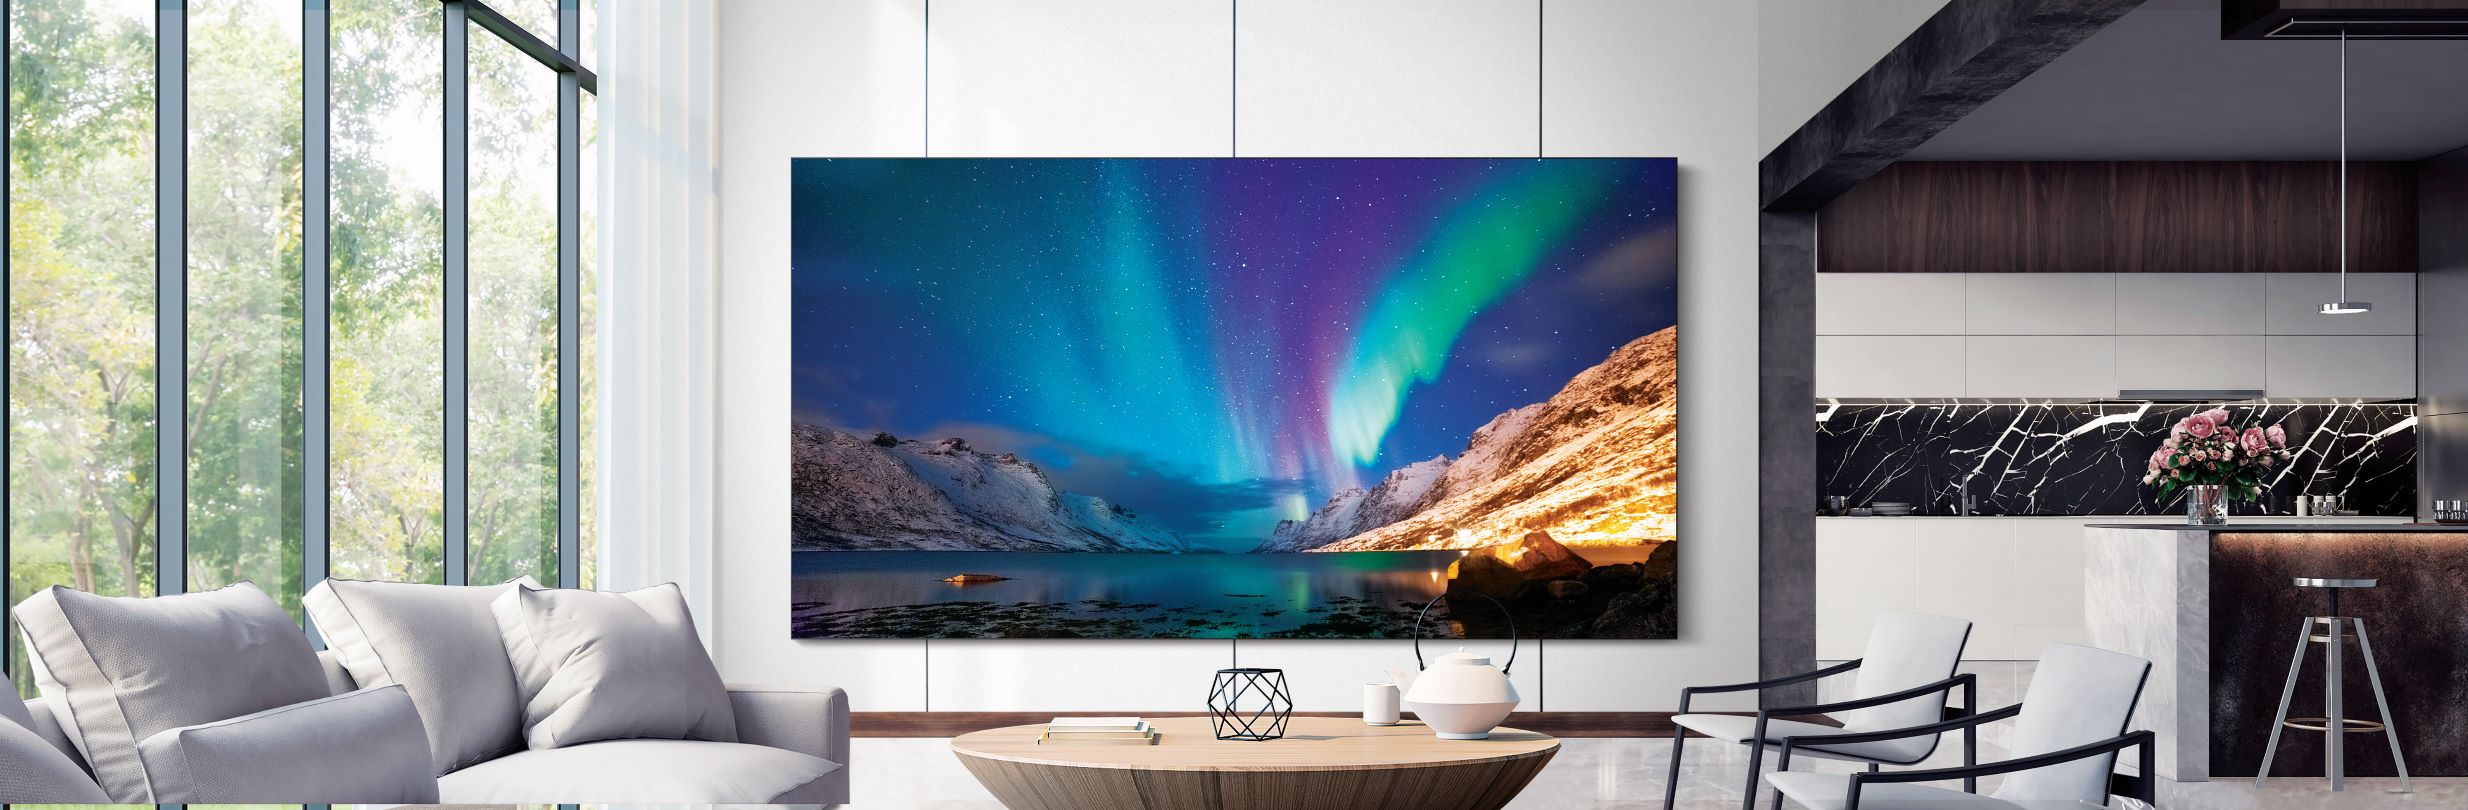 Samsung ra mắt dòng sản phẩm TV MicroLED, QLED 8K và Lifestyle TV mới